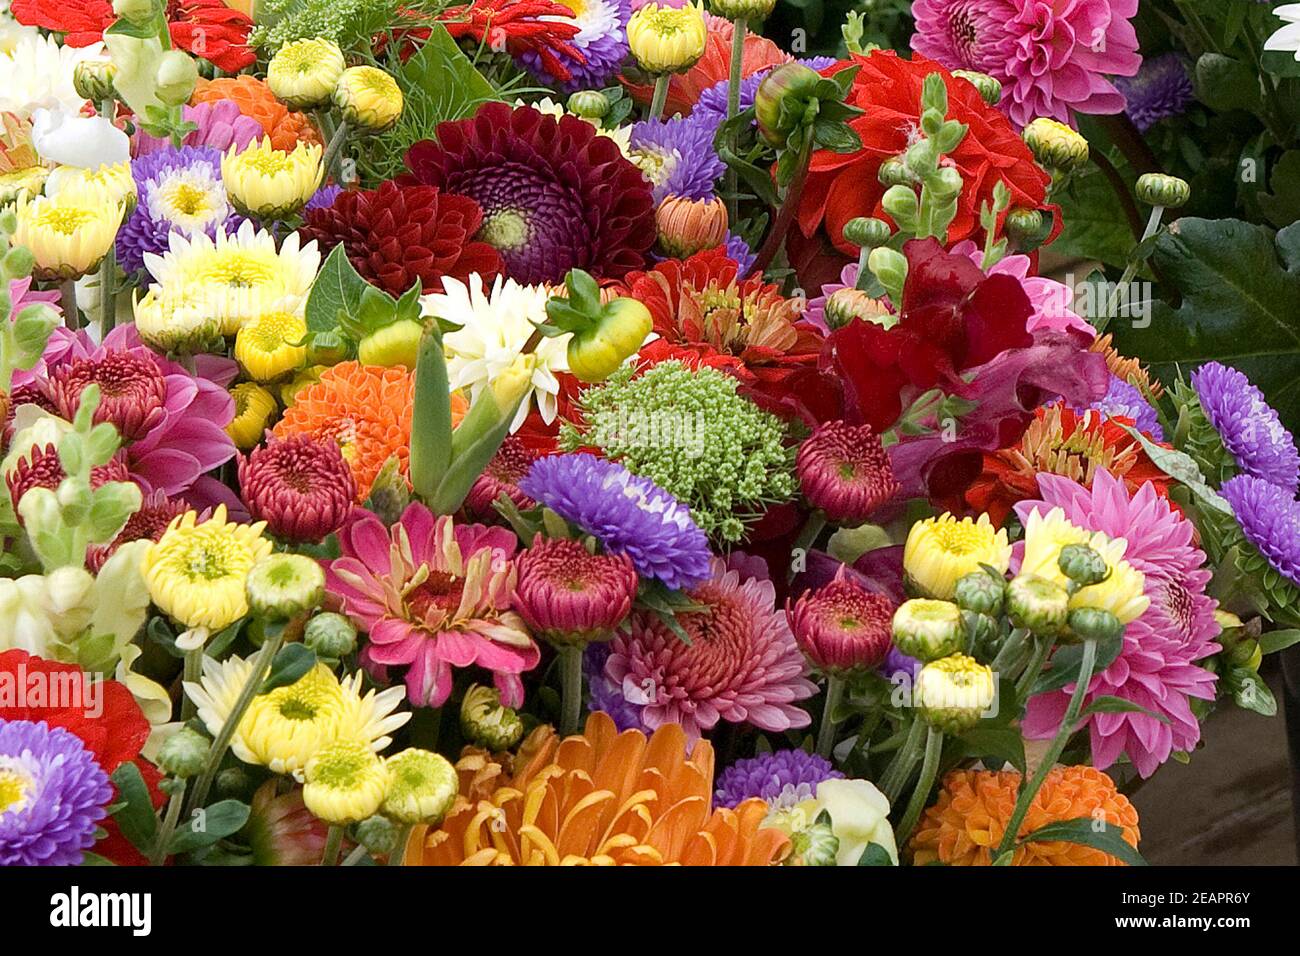 Blumenmarkt, Blumenstrauss Foto Stock